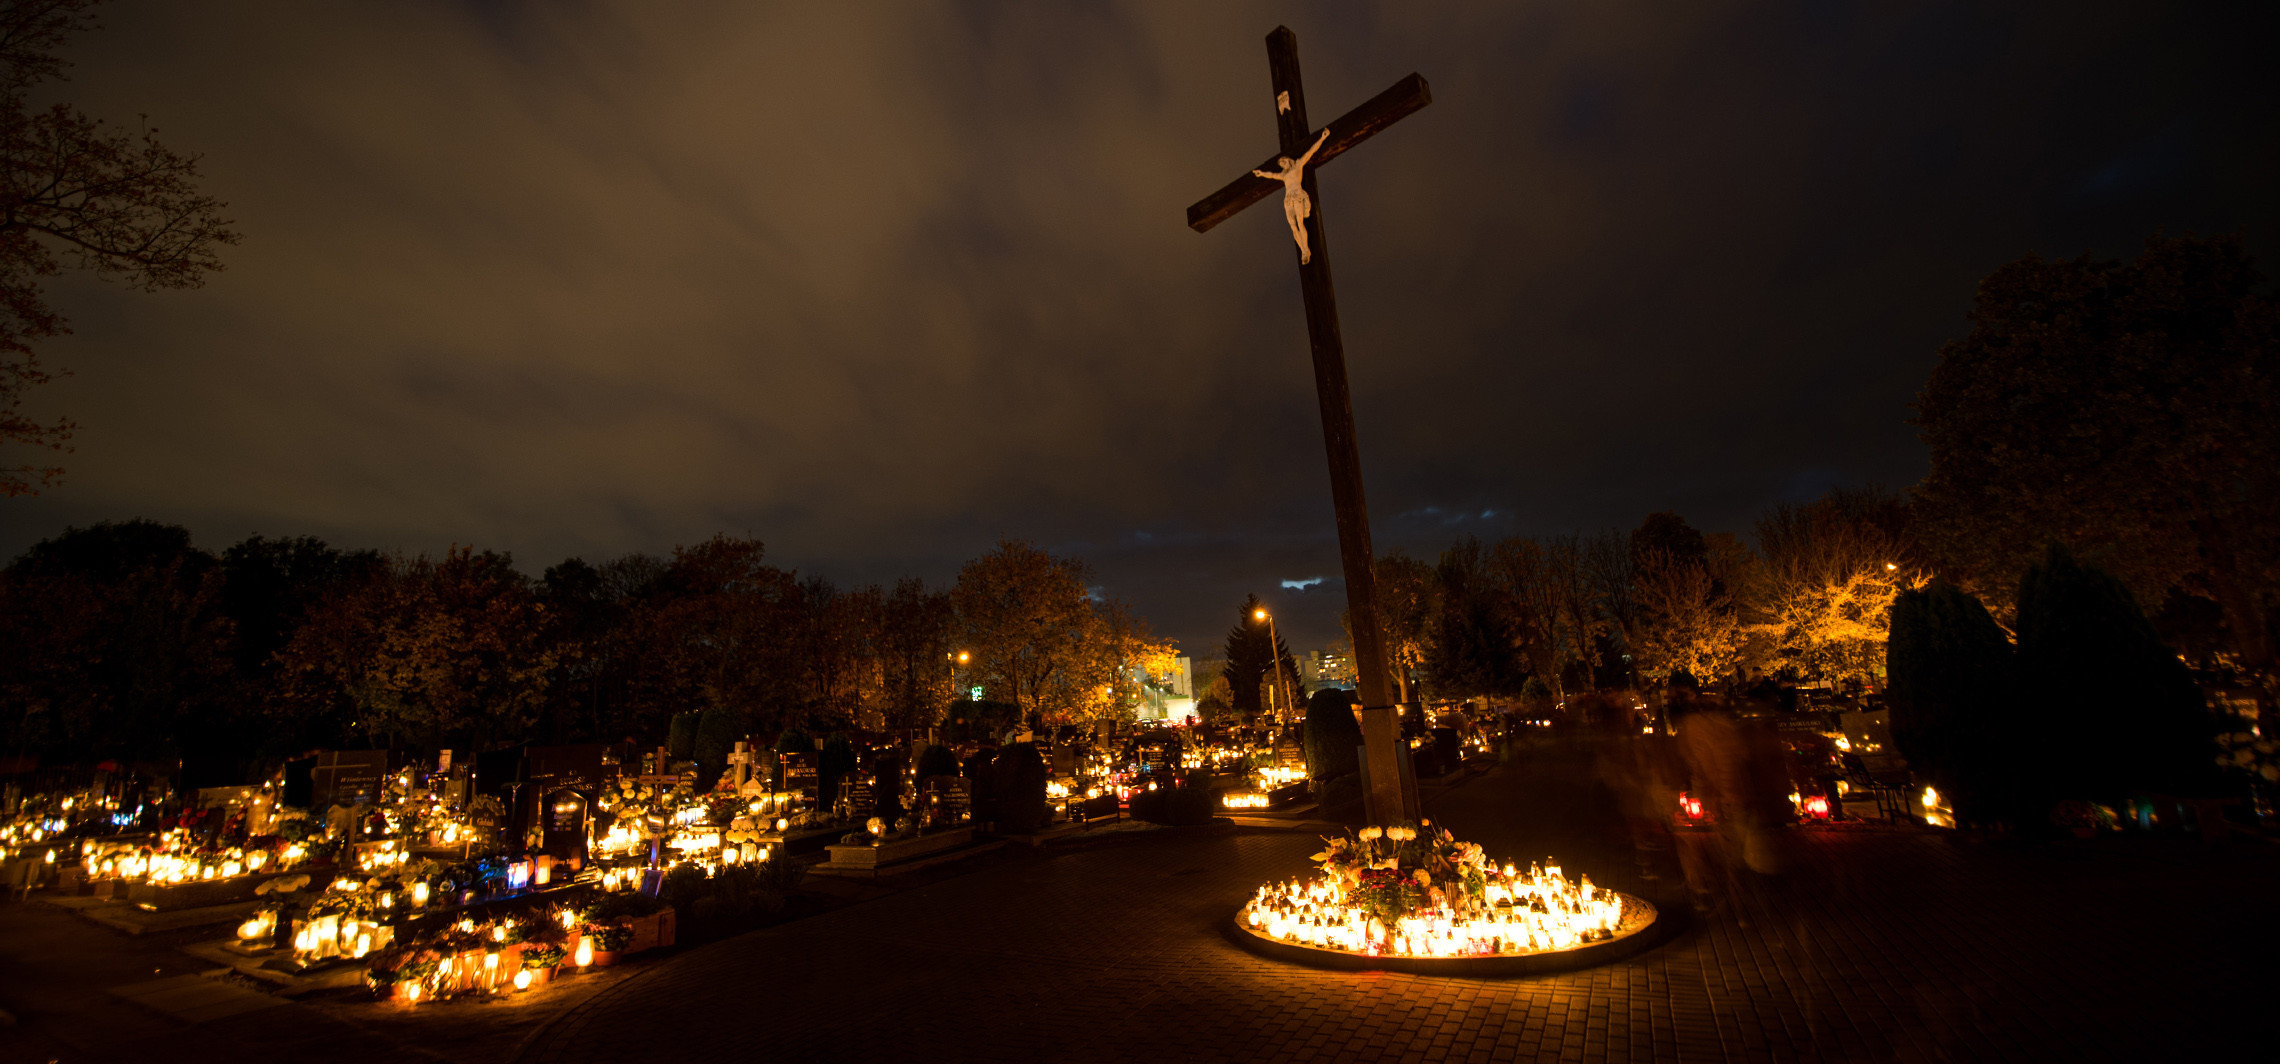 Inowrocław - Inowrocławskie cmentarze rozświetlone tysiącami zniczy